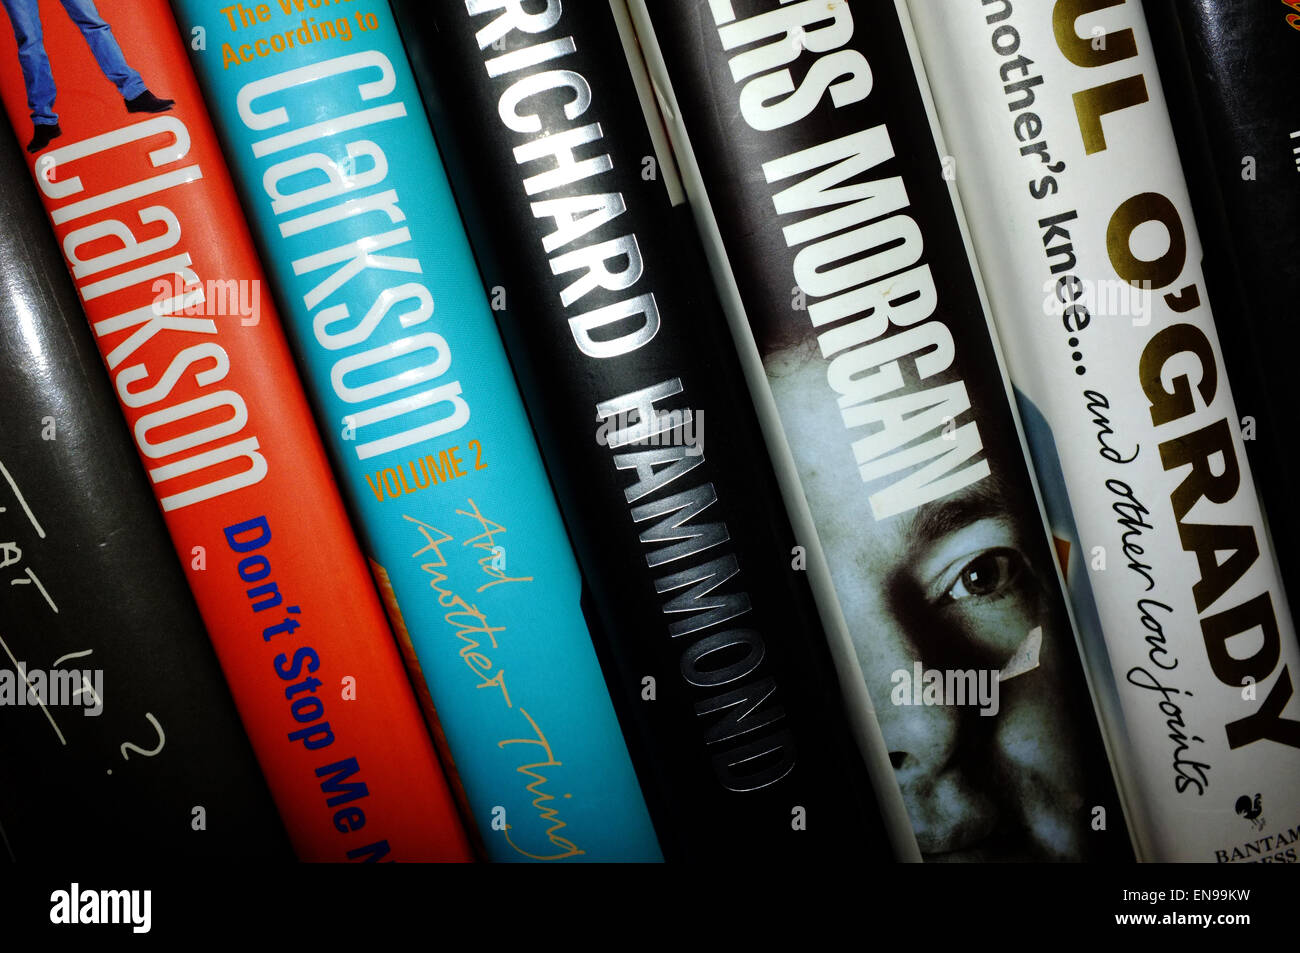 Una selección de la celebridad de autobiografías en incluidos libros por Piers Morgan y Jeremy Clarkson en pantalla galés en un B&B. Foto de stock